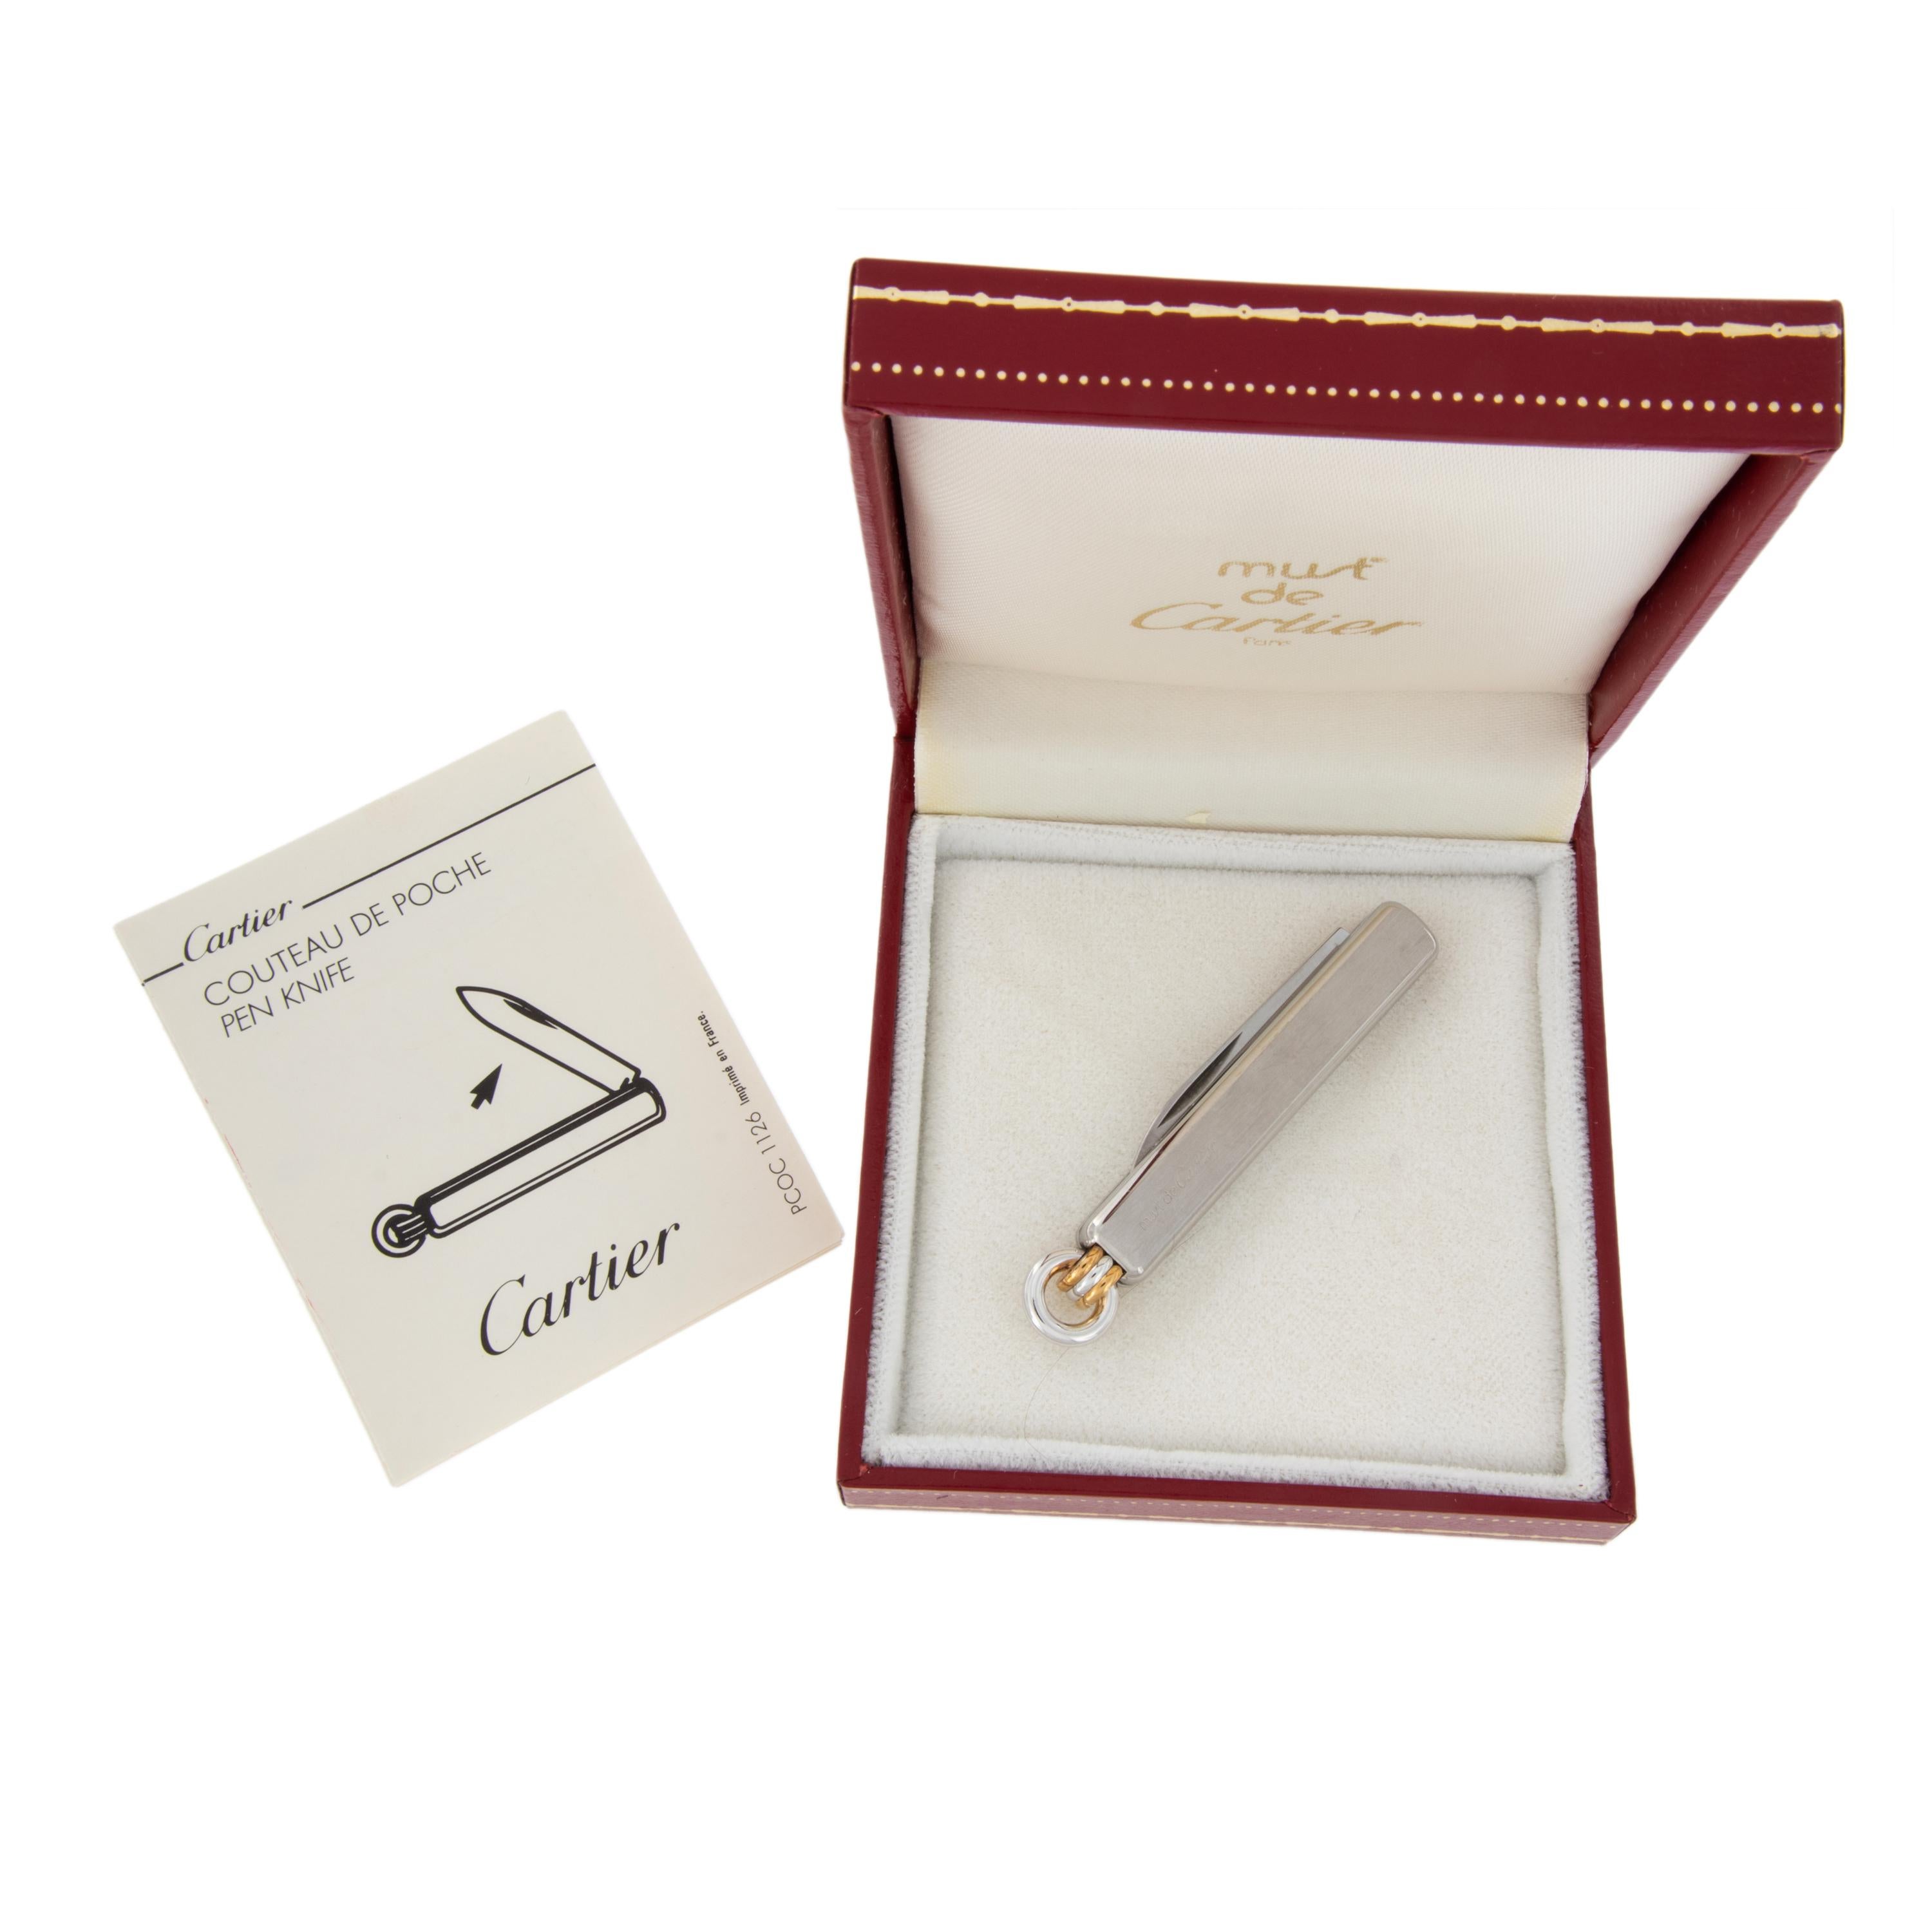 'Rare' Must de Cartier Pocket Knife Brand New with Original Box 2